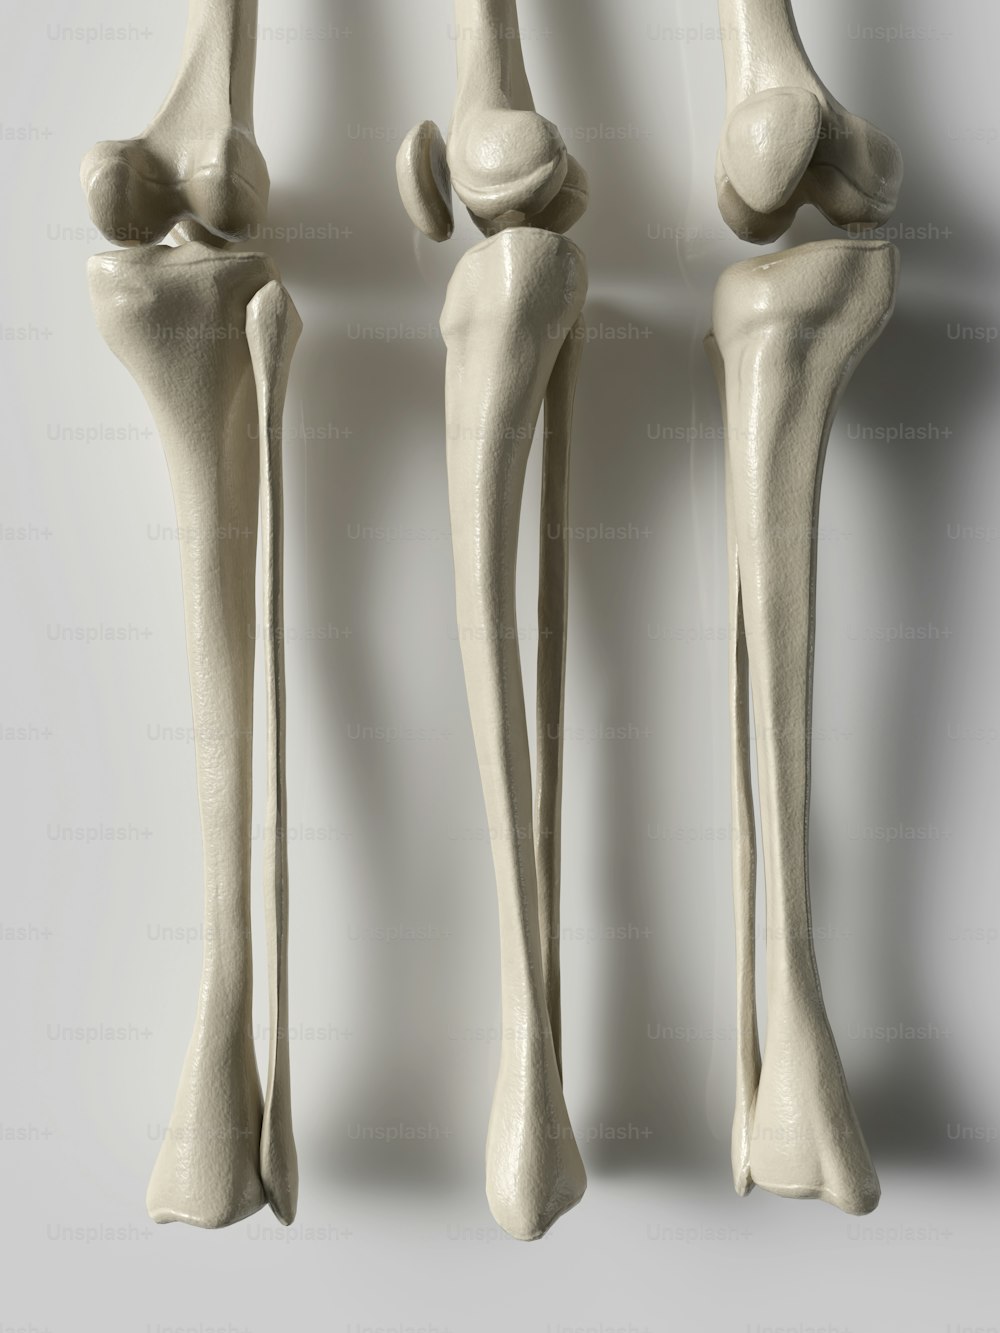 Tres puntos de vista diferentes de los huesos de un ser humano